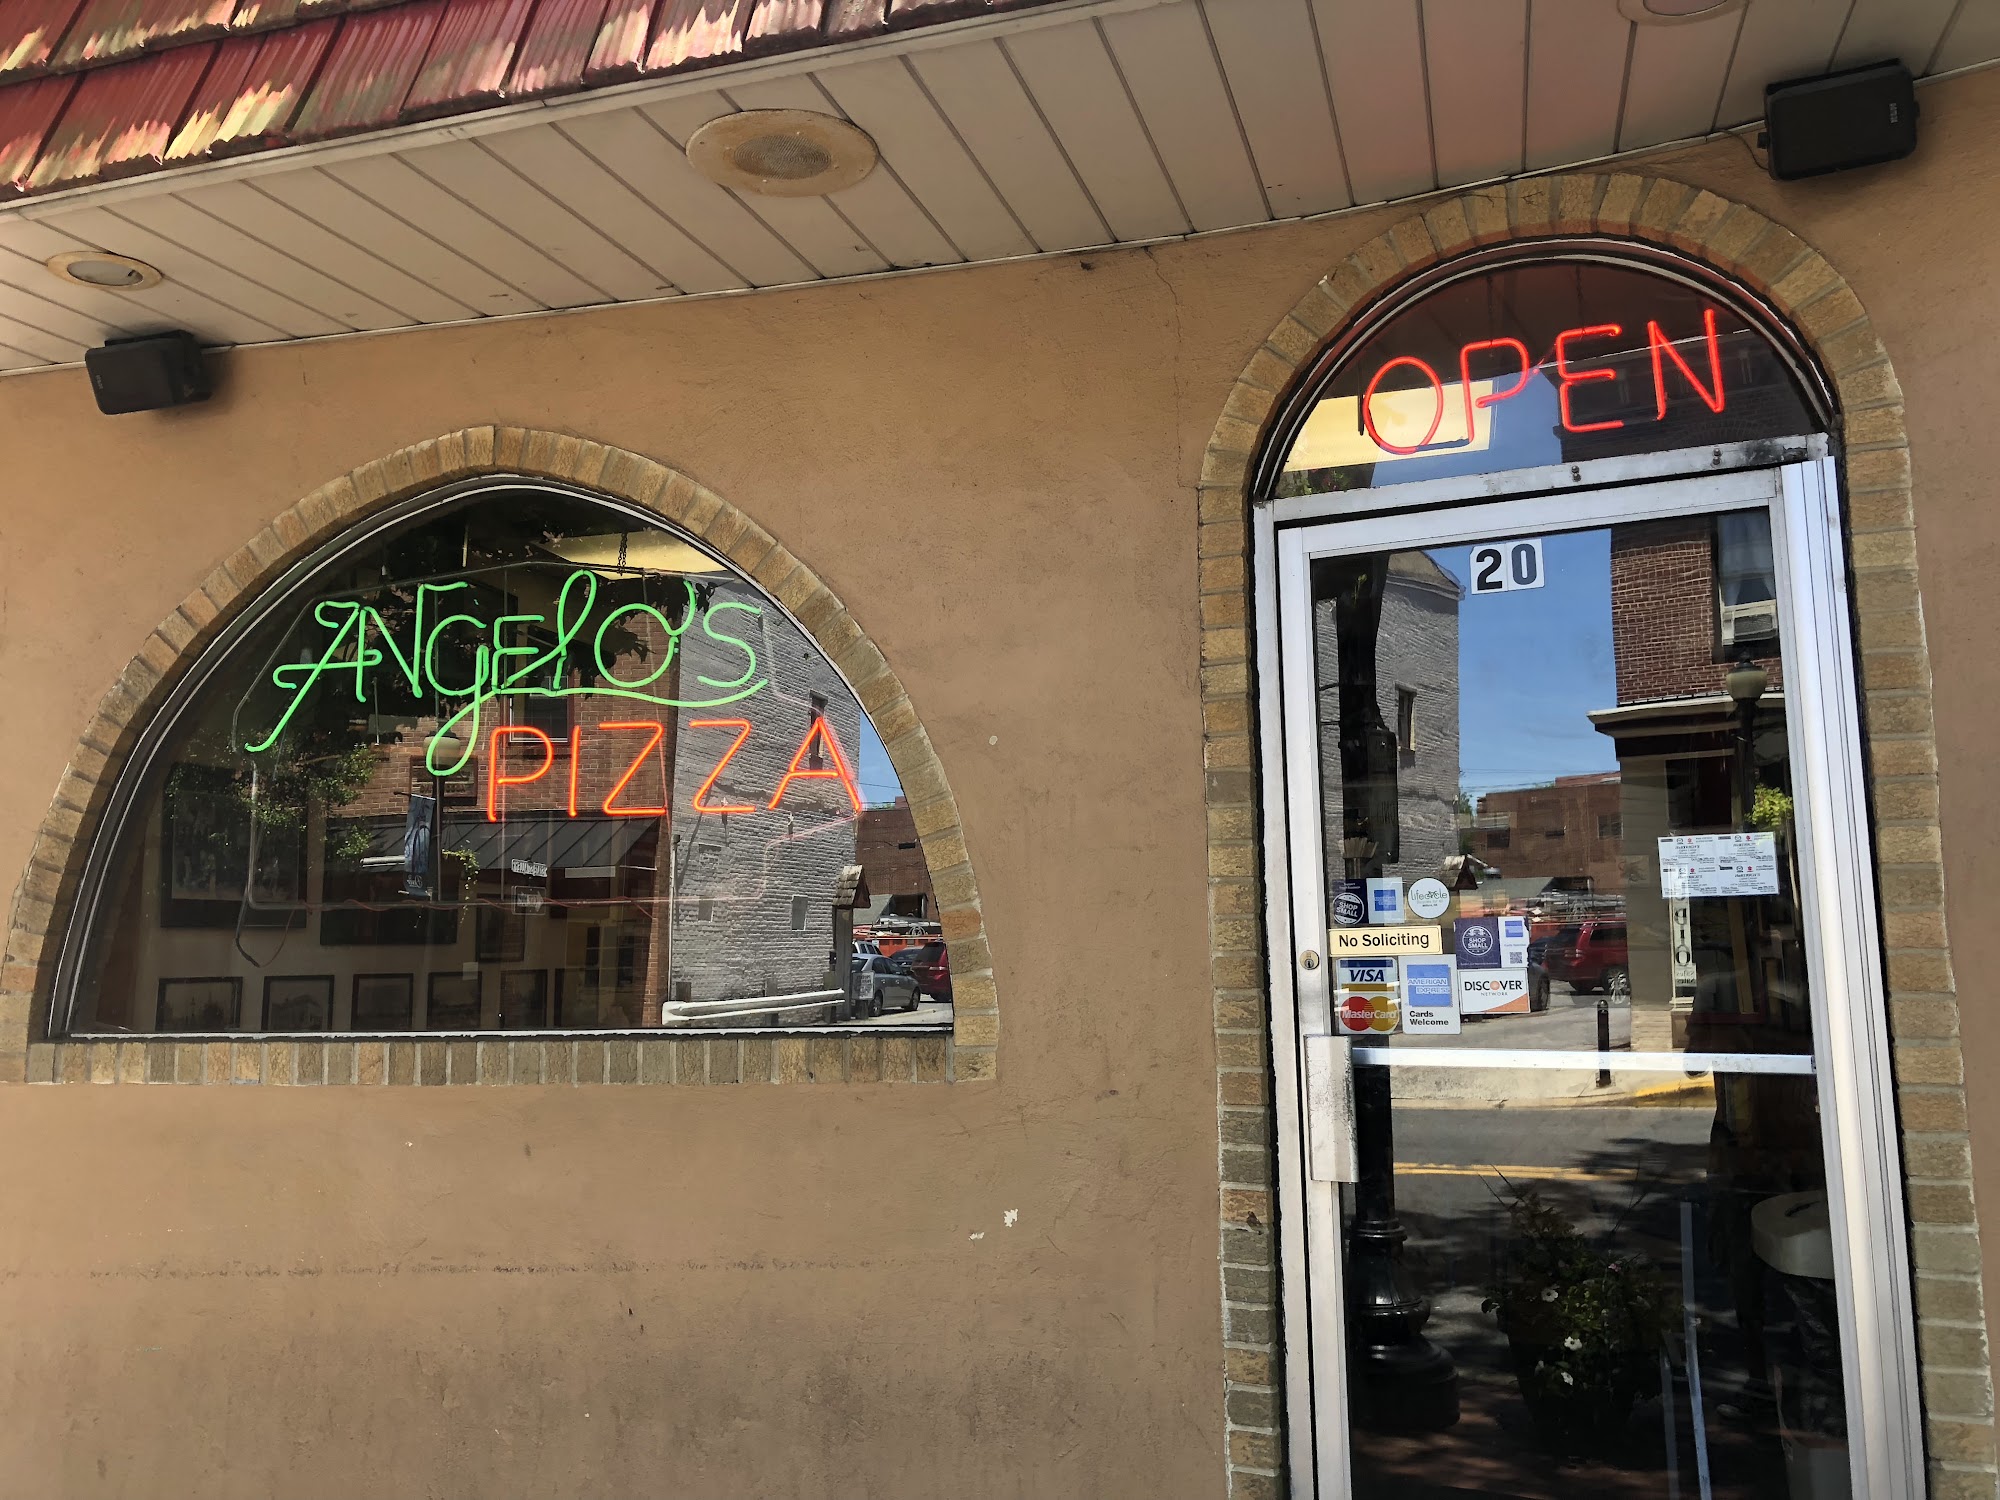 Angelo's Pizza